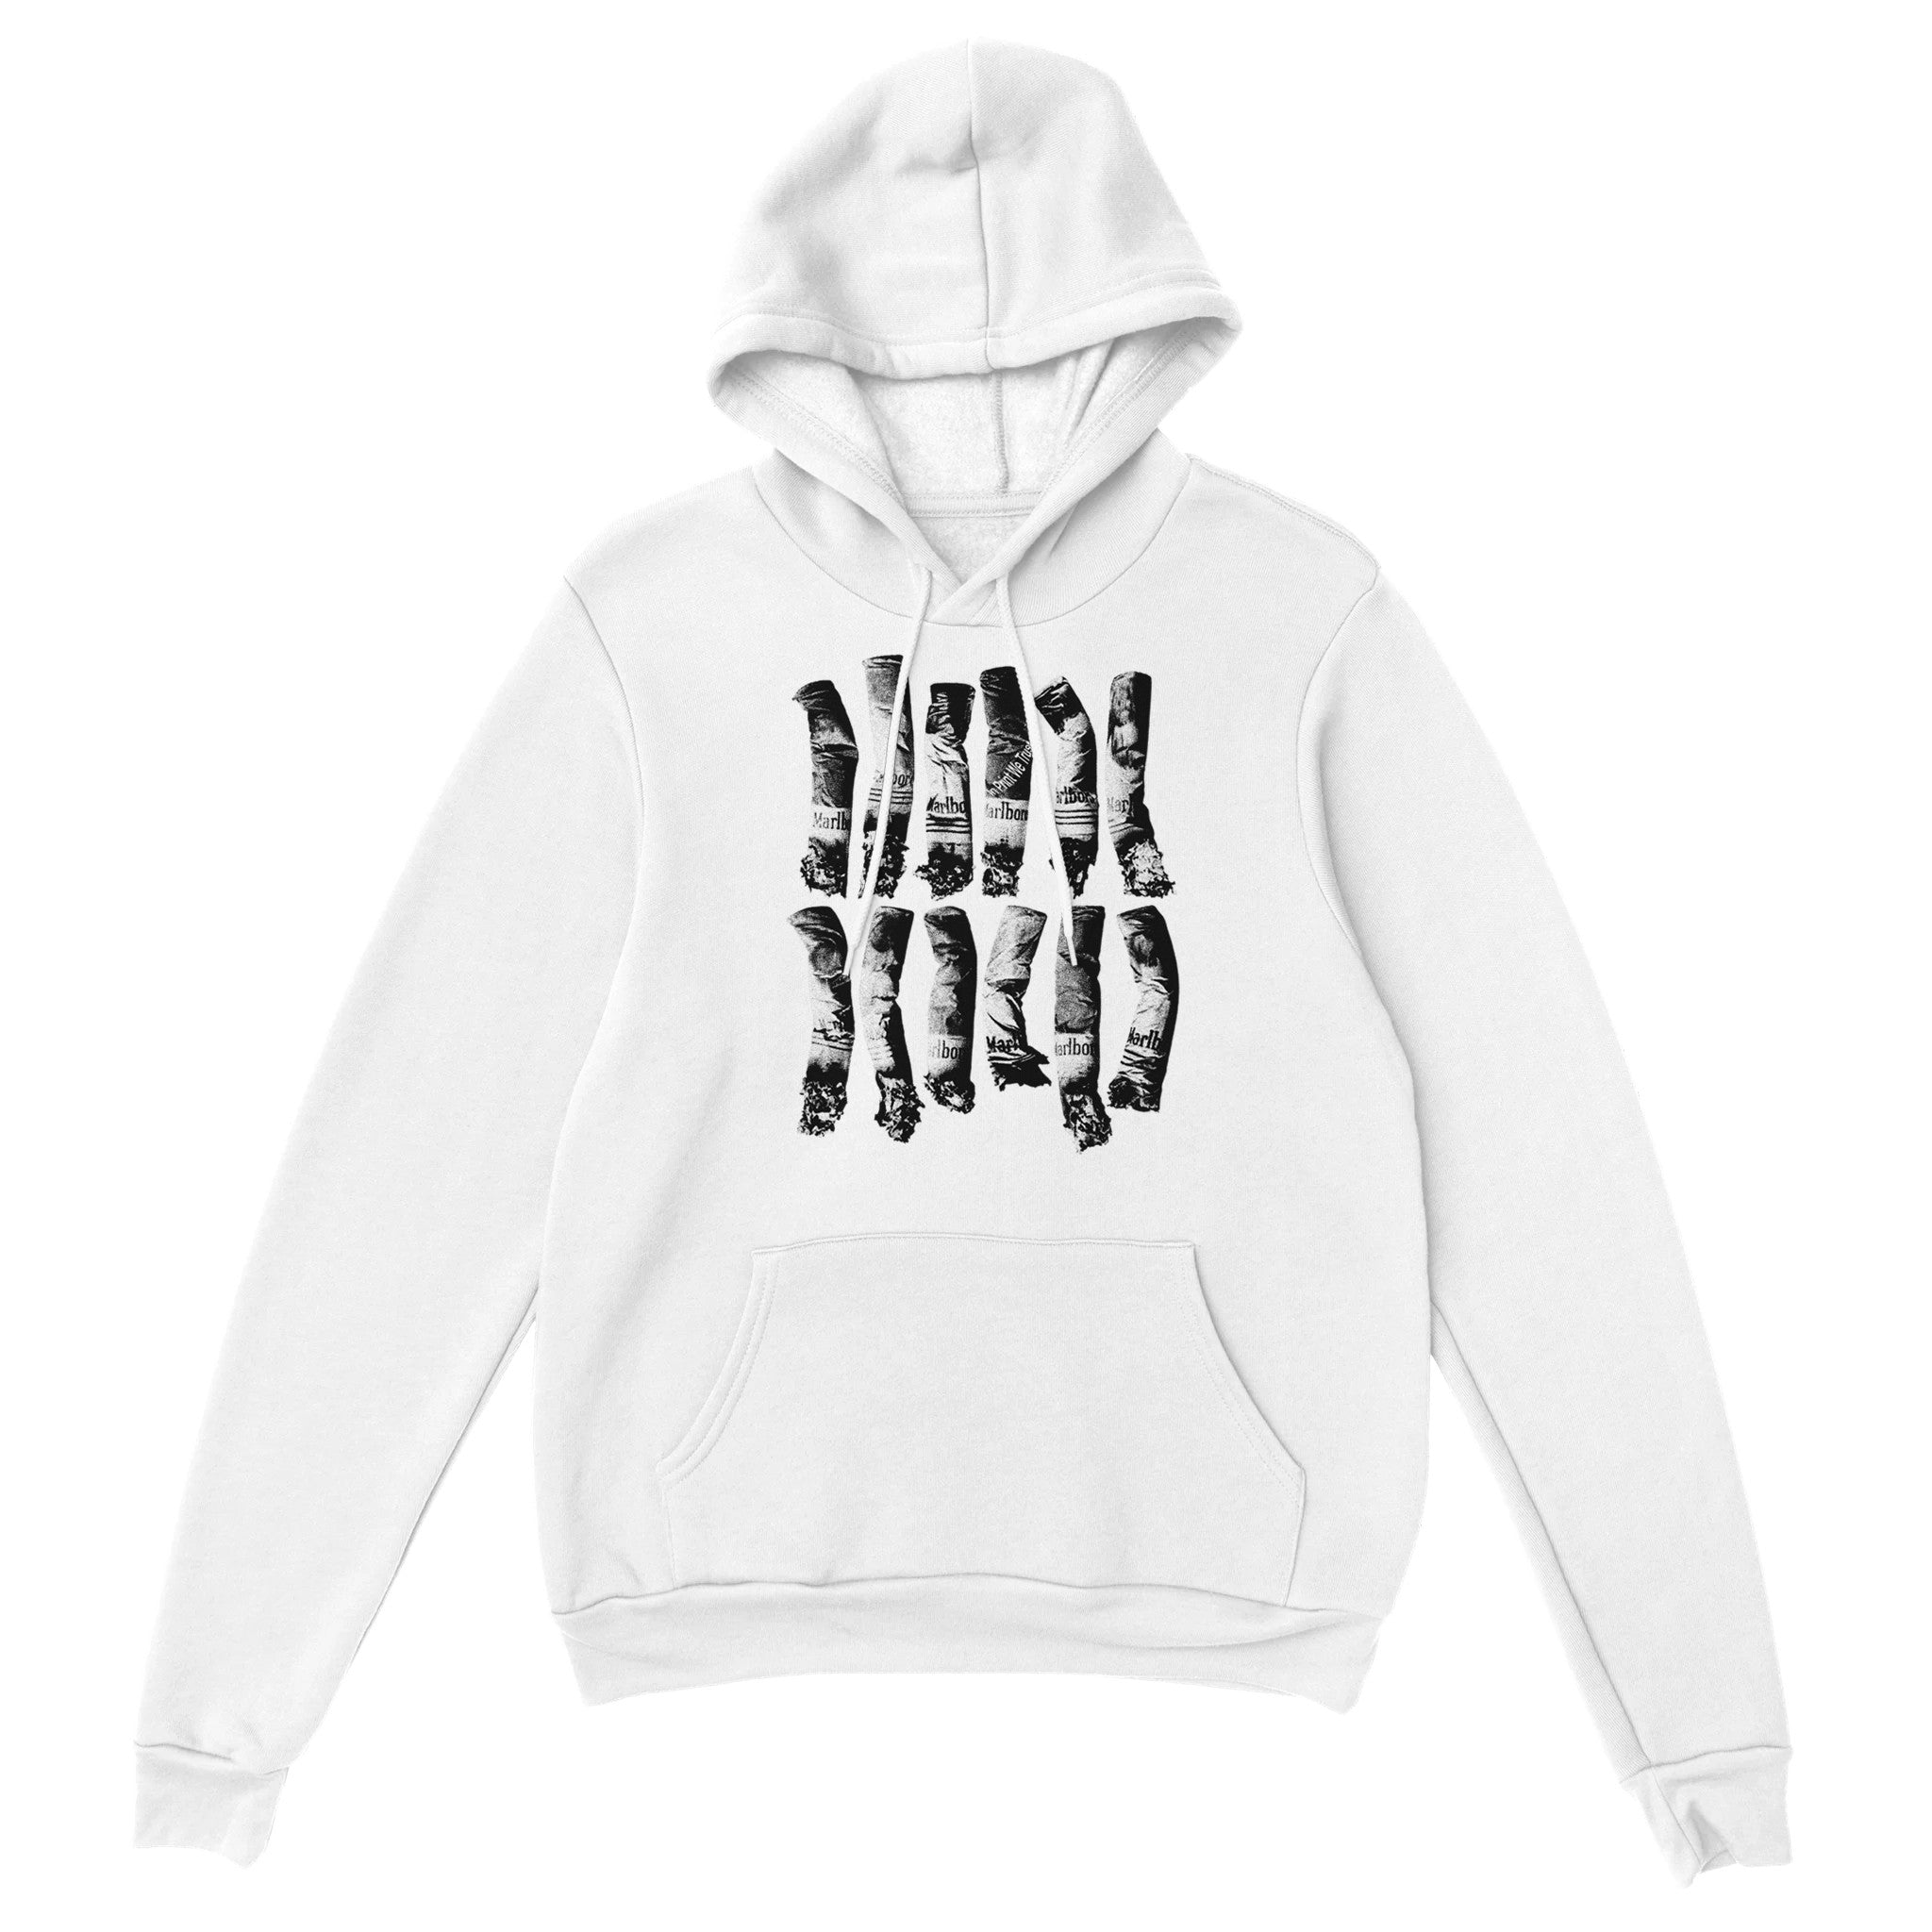 'Marlboro' hoodie - In Print We Trust